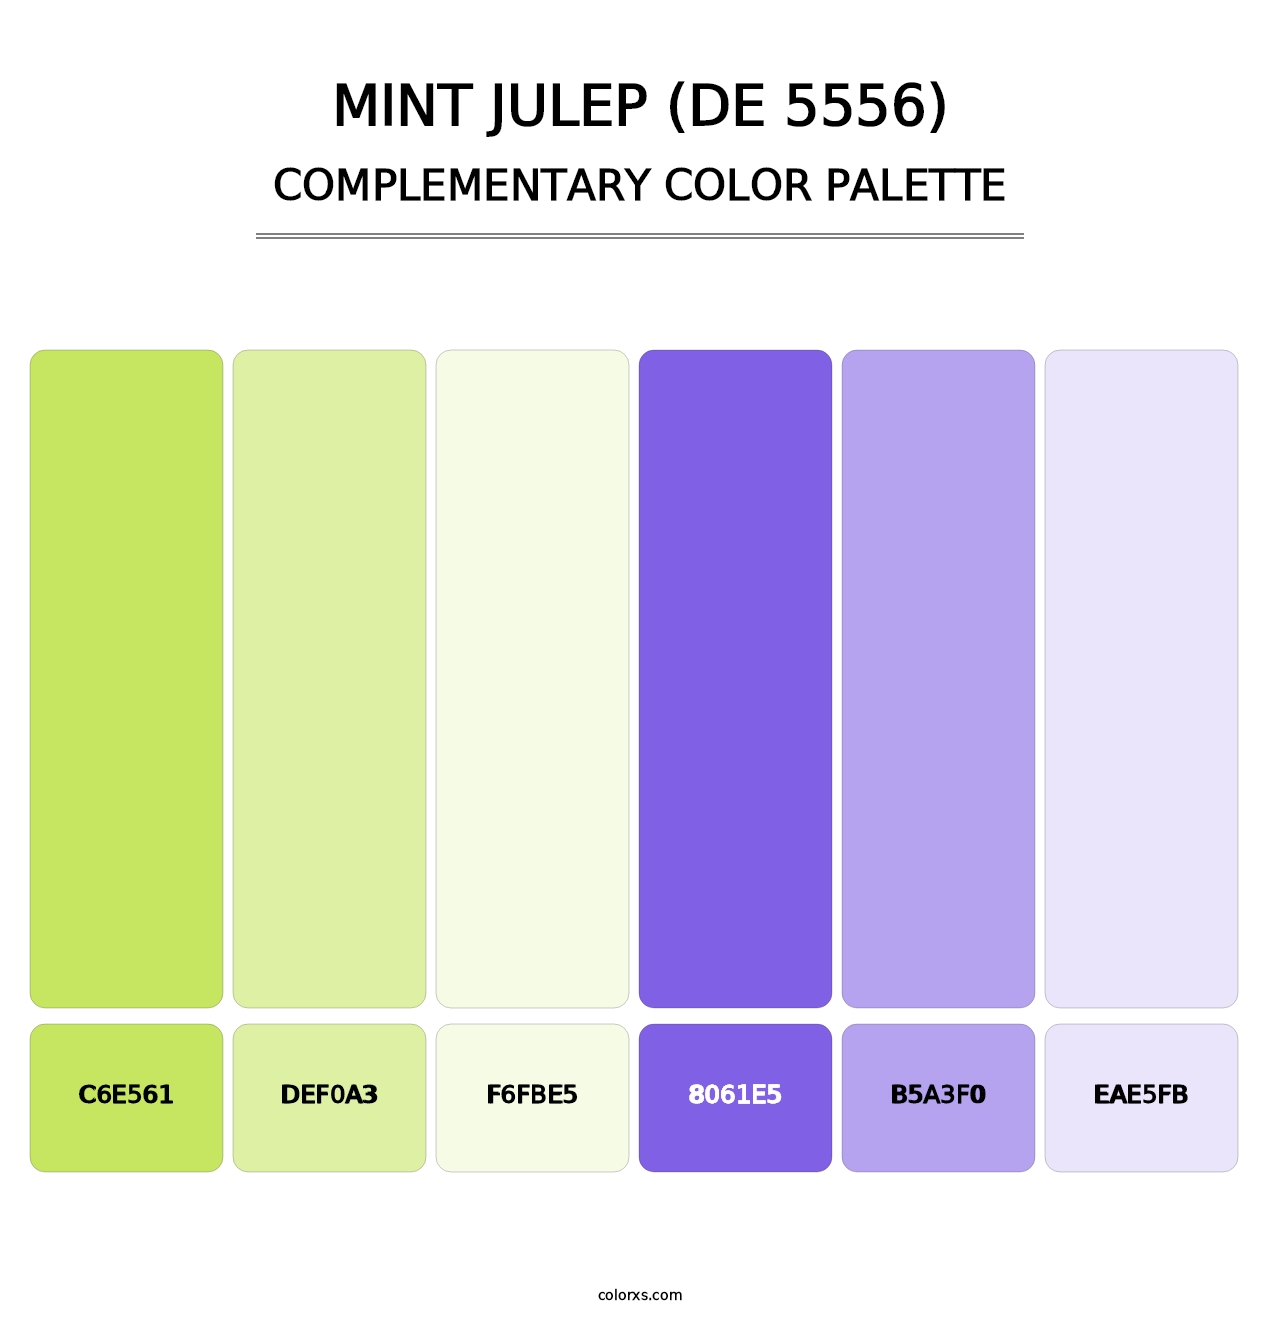 Mint Julep (DE 5556) - Complementary Color Palette